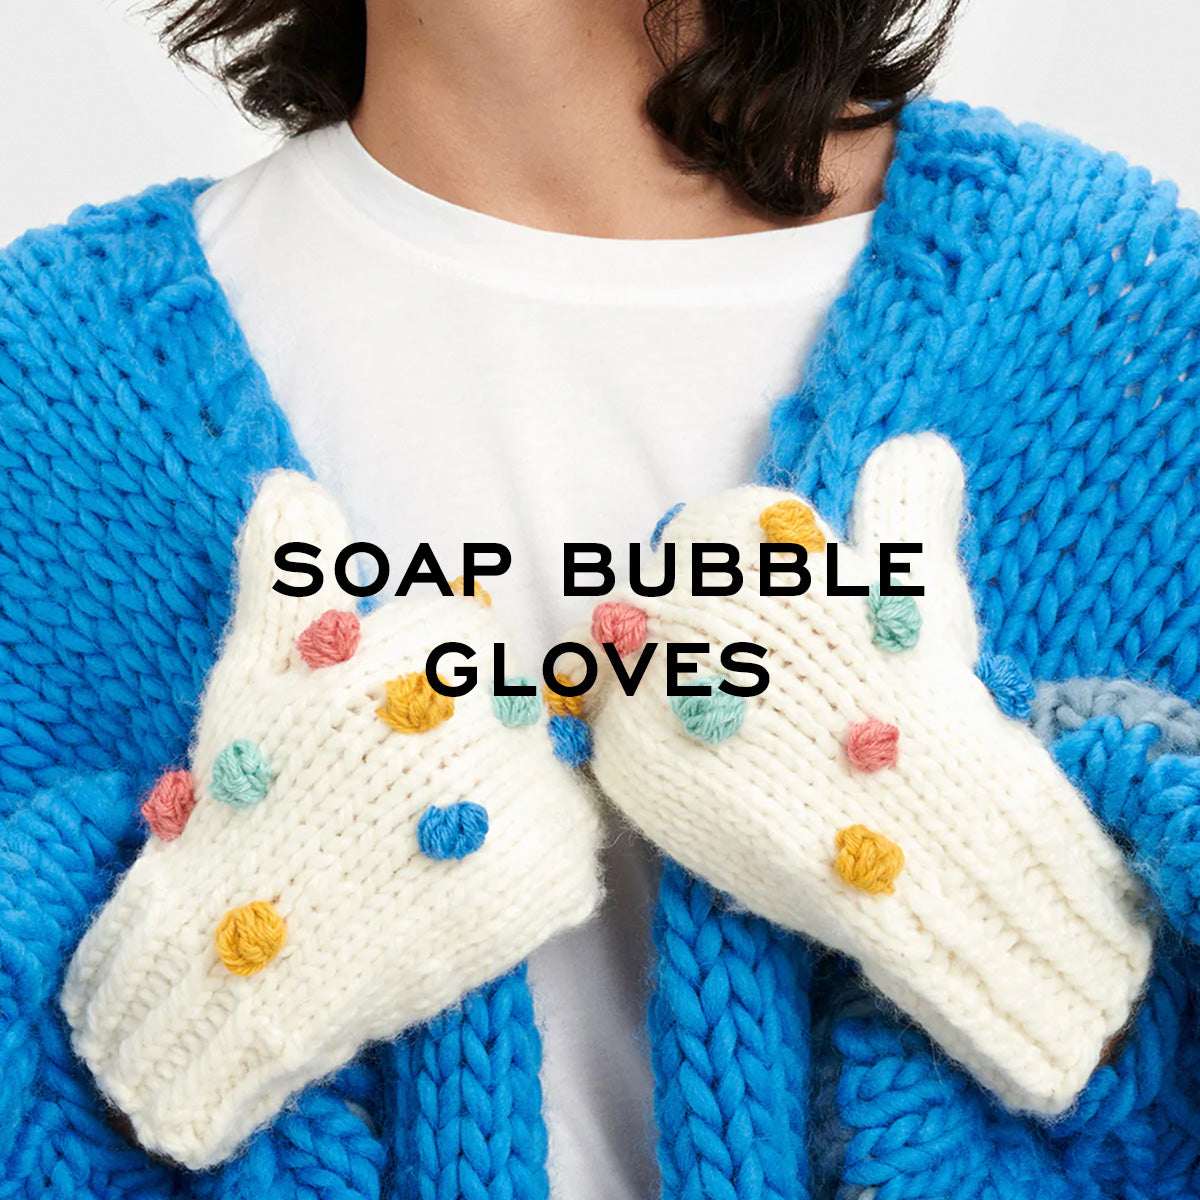 Soap bubble gloves